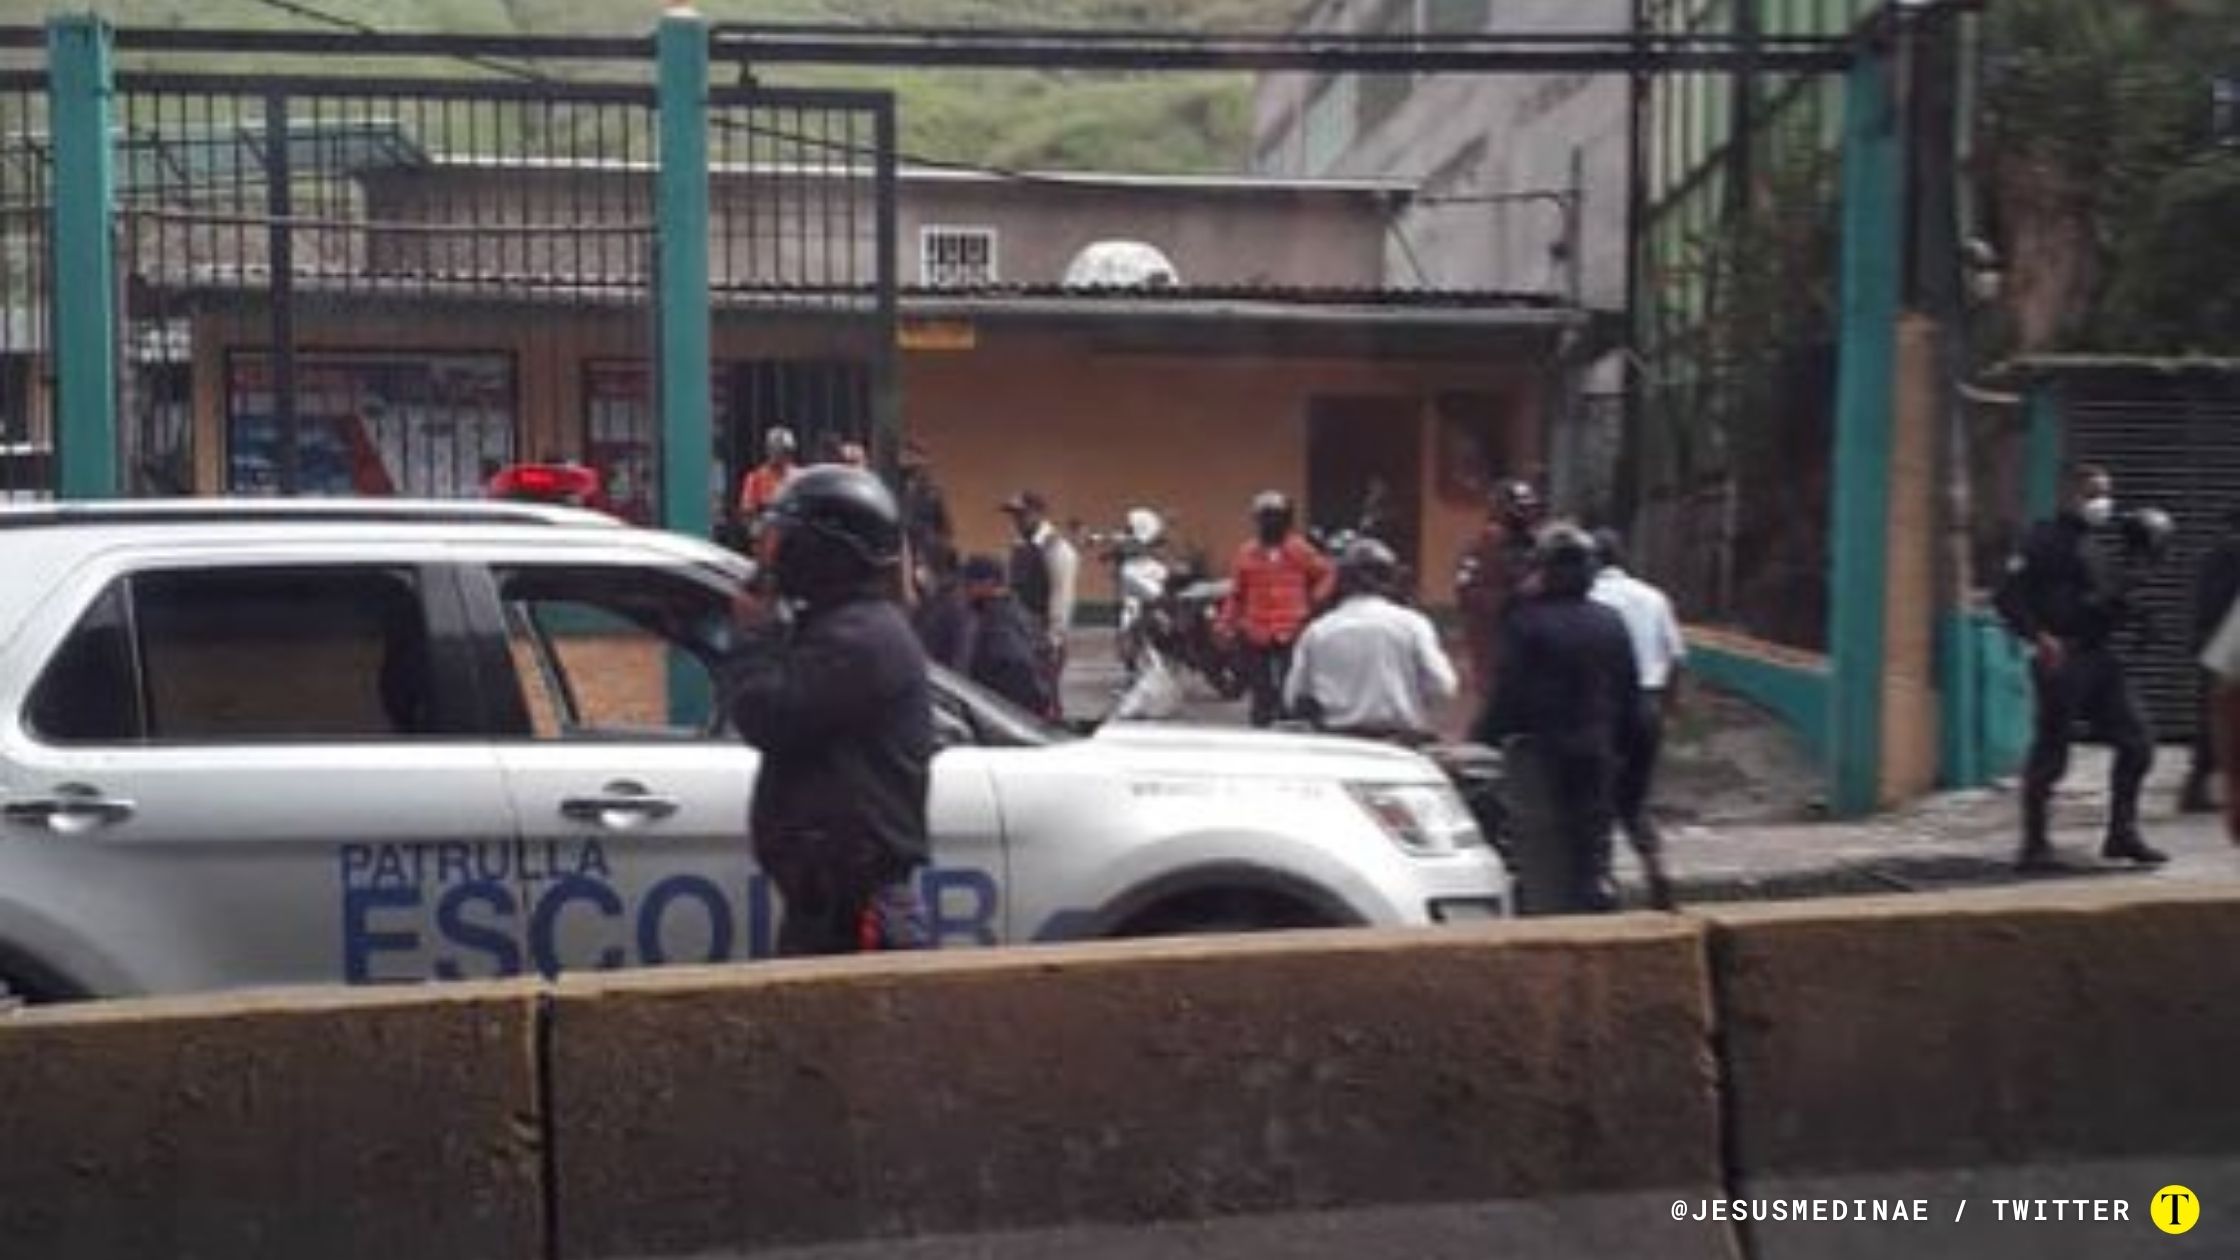 Cuerpos de seguridad en el kilómetro 18 de la carretera Panamericana por enfrentamiento con delicuentes. Foto: @jesusmedinae / Twitter